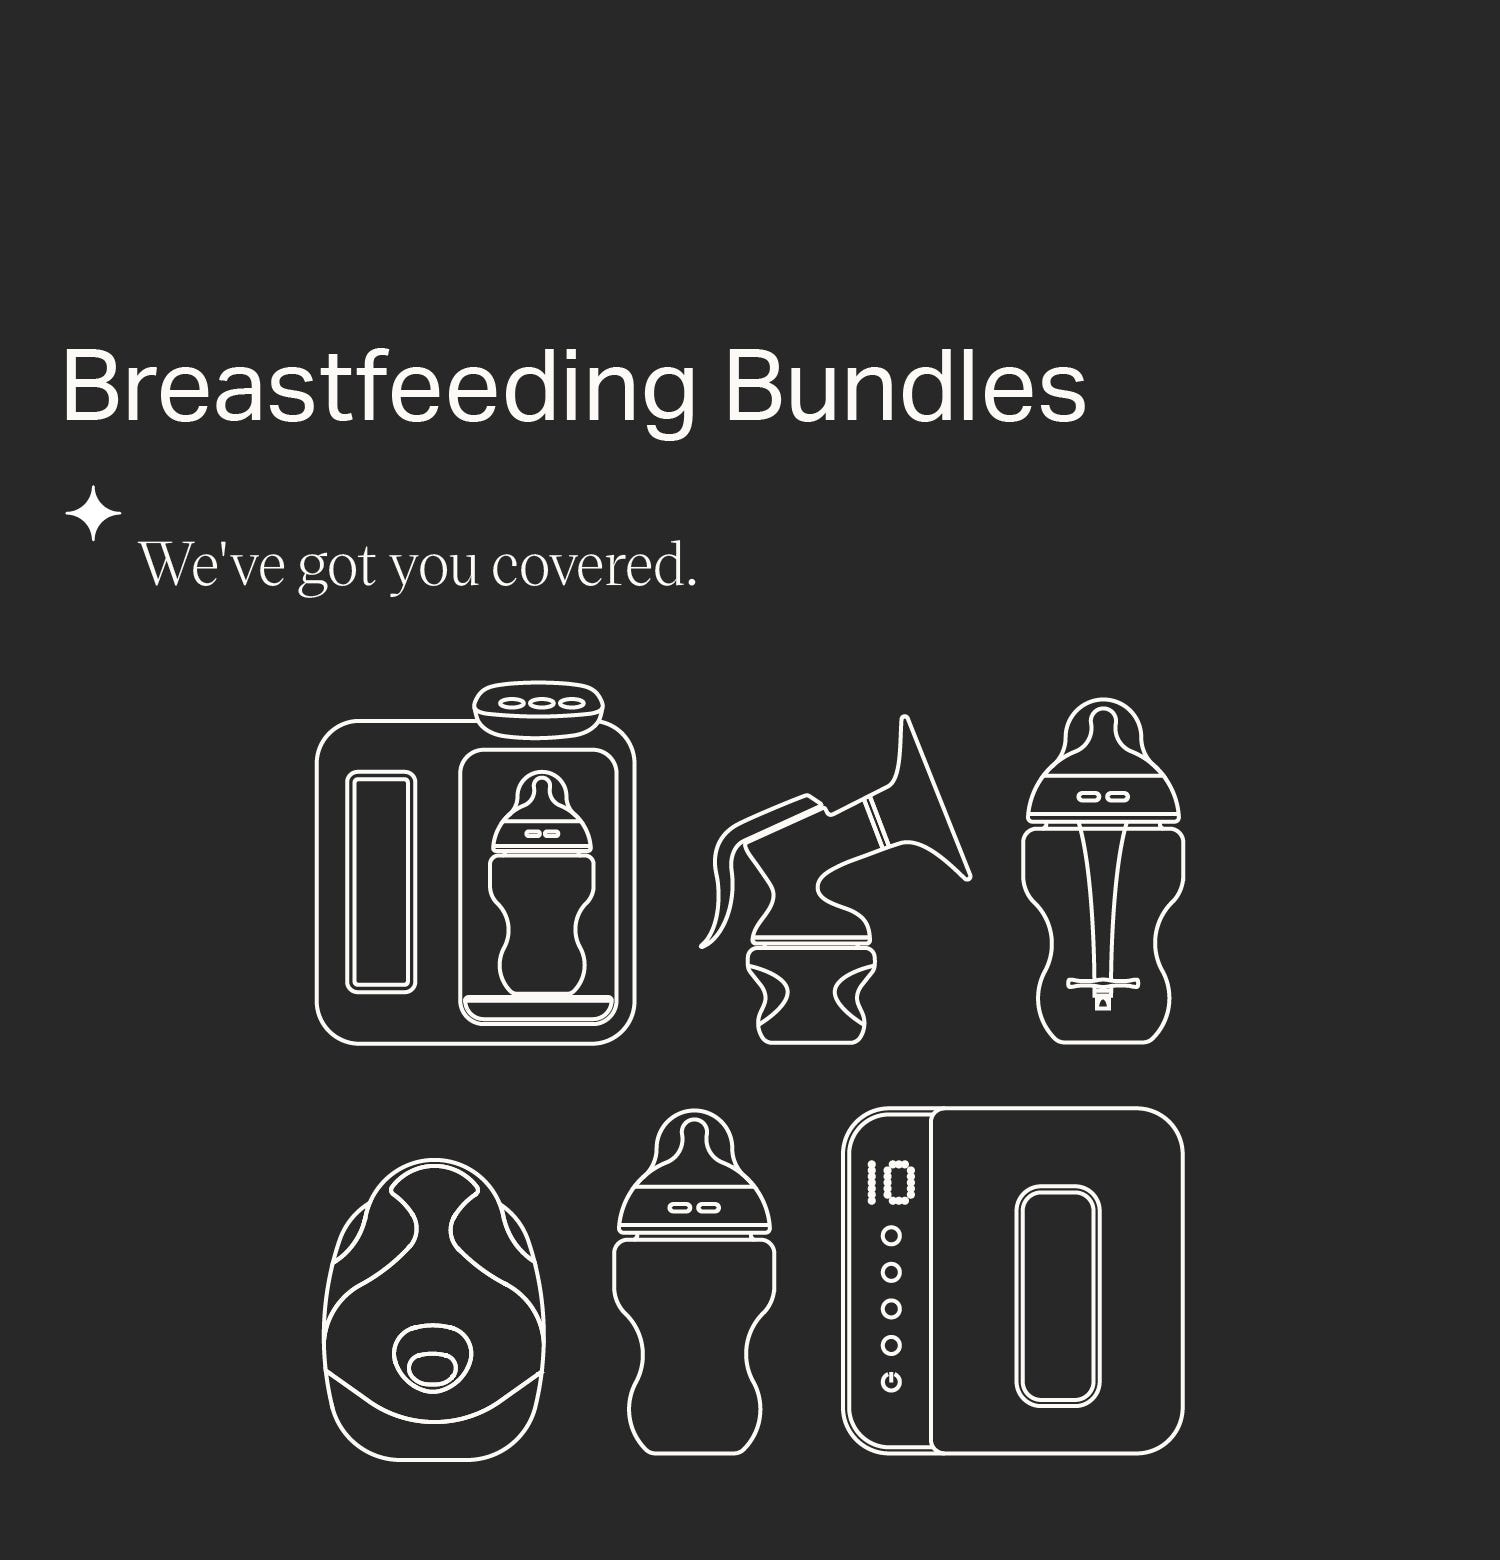 Breastfeeding Bundles